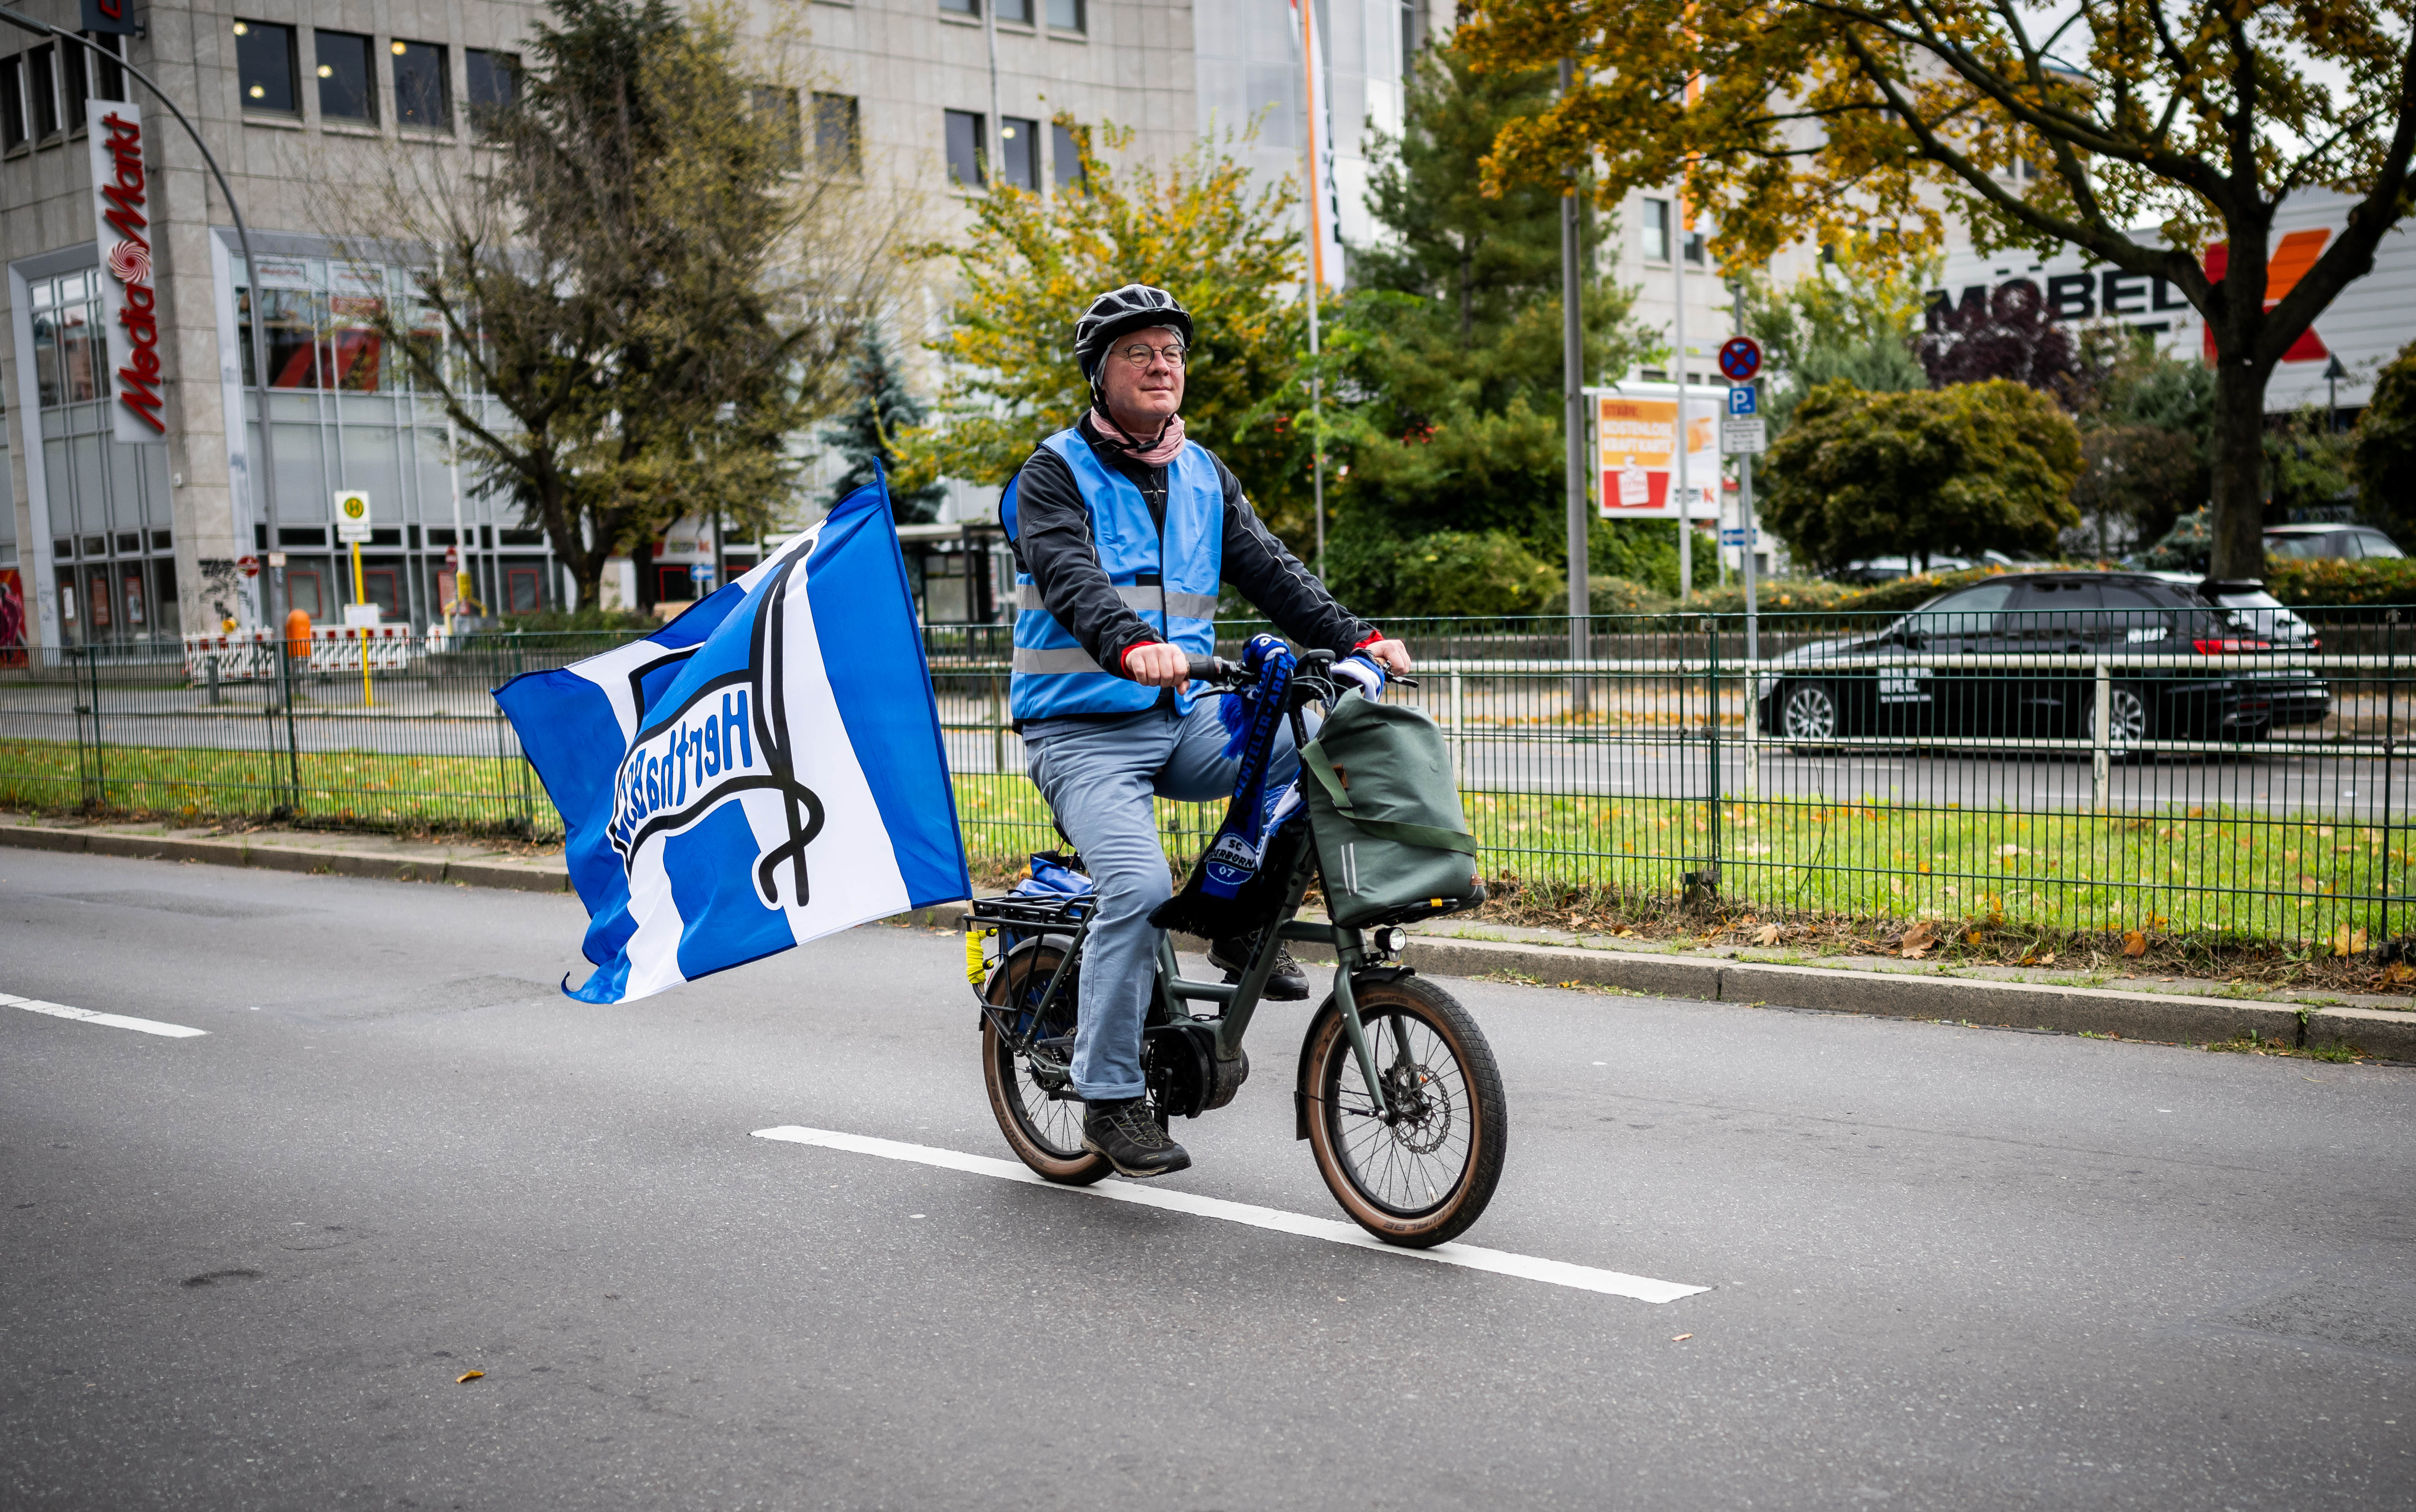 Ein Teilnehmer der Fahrradtour ist mit großer Hertha-Fahne unterwegs.